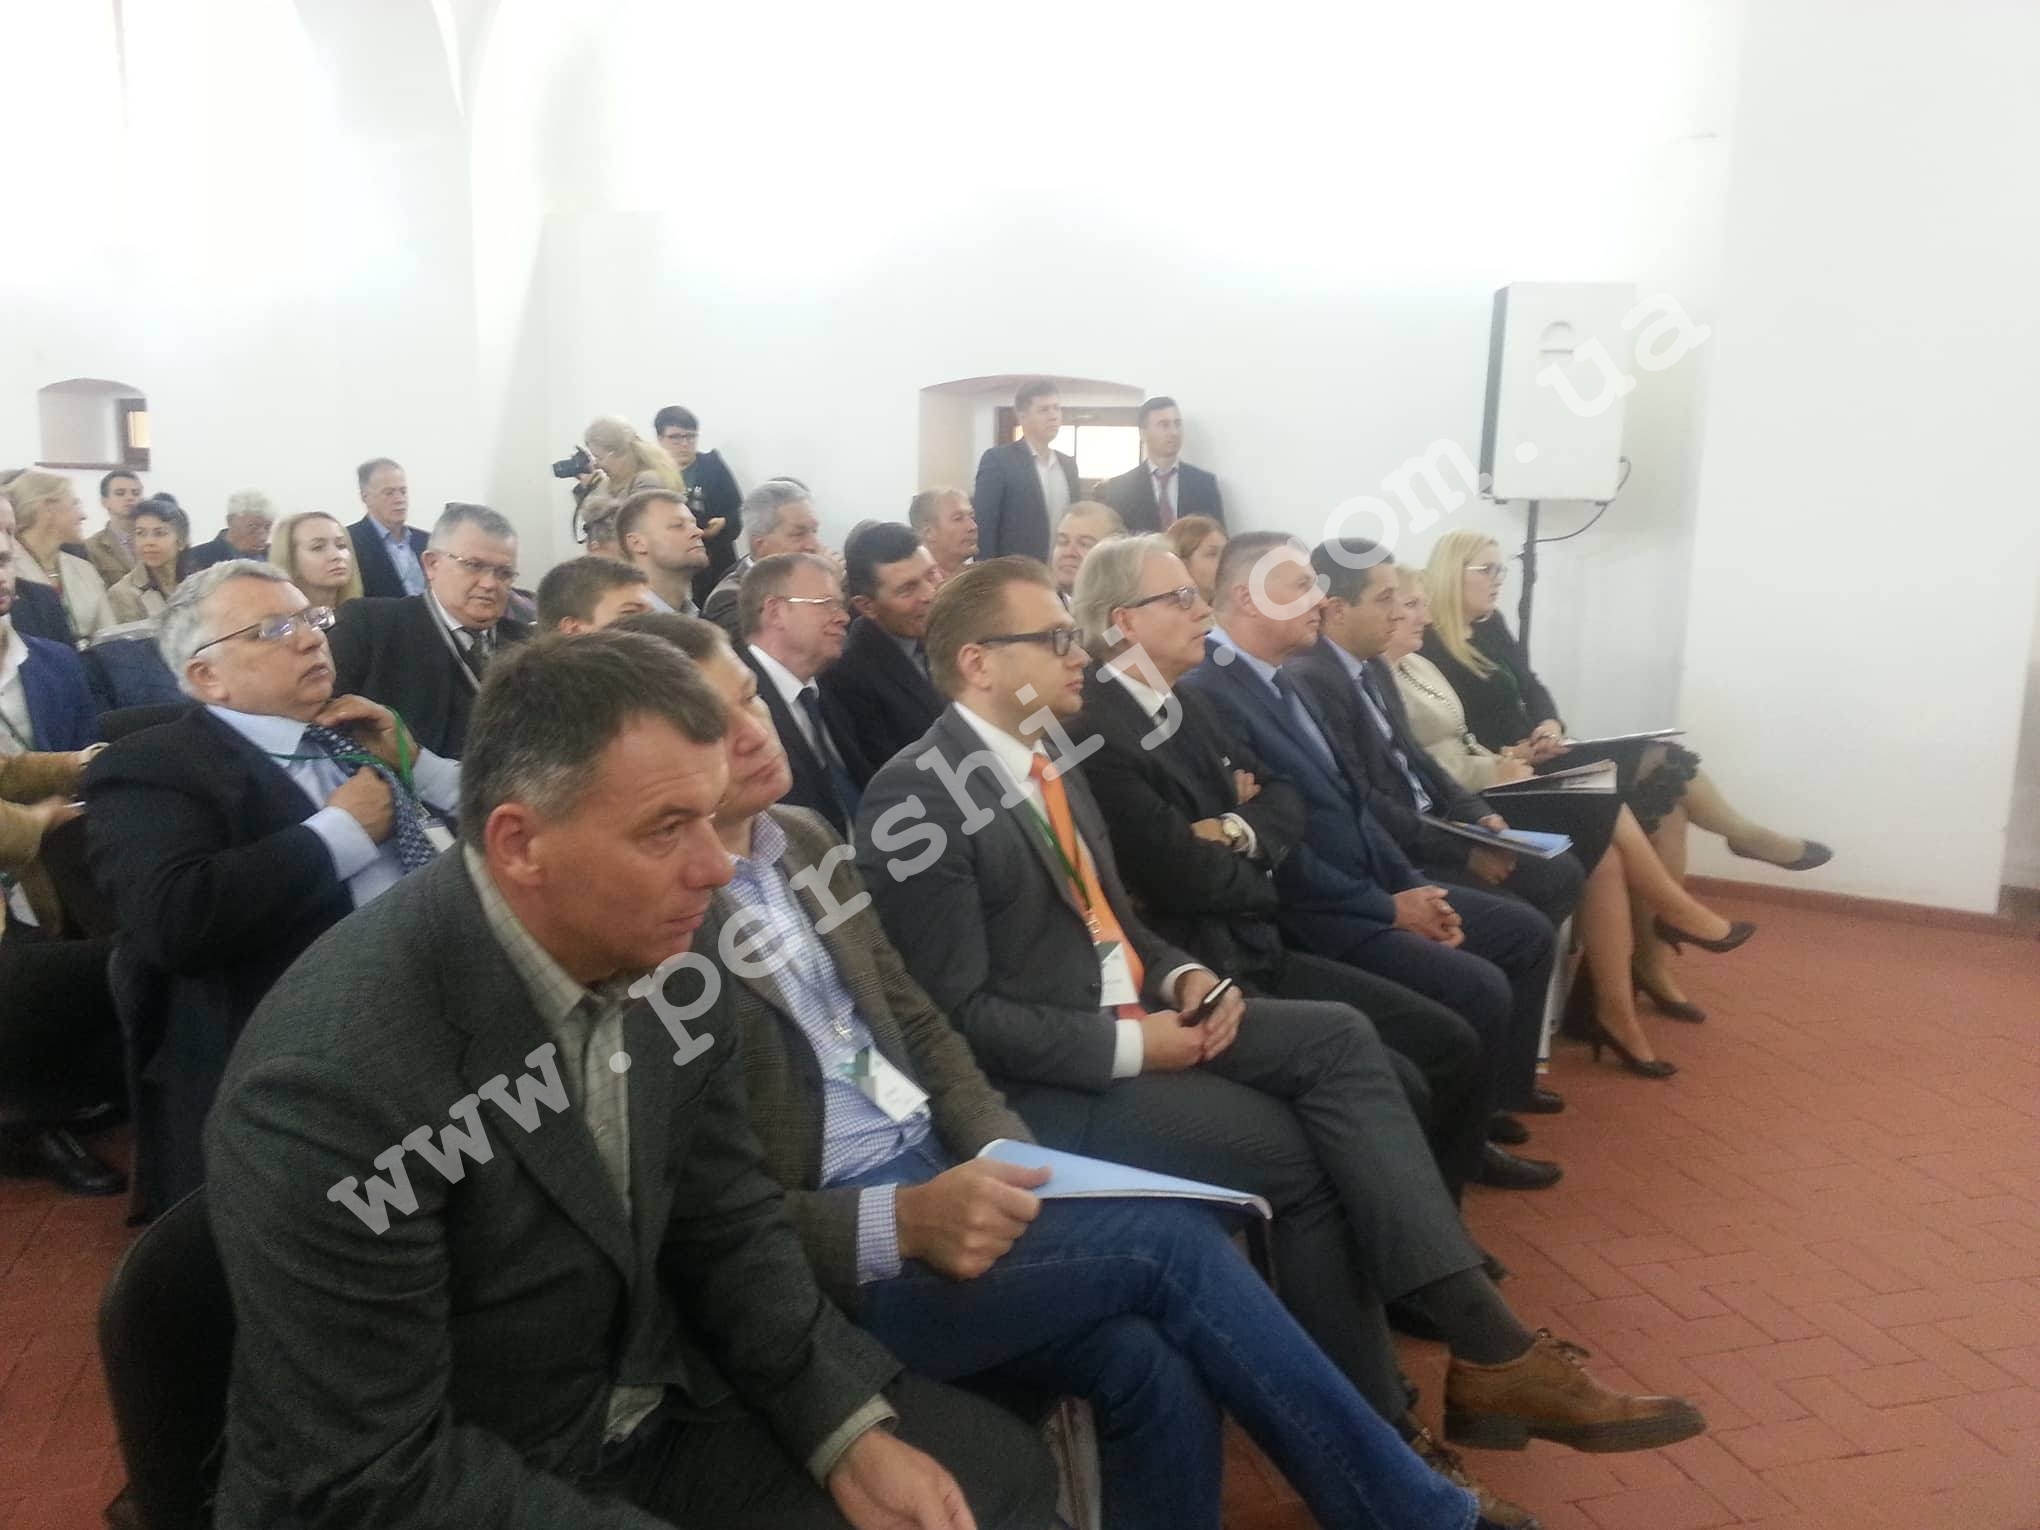 "Закарпаття - бізнес в центрі Європи": інвестиційний форум стартував в Ужгороді (ФОТО)